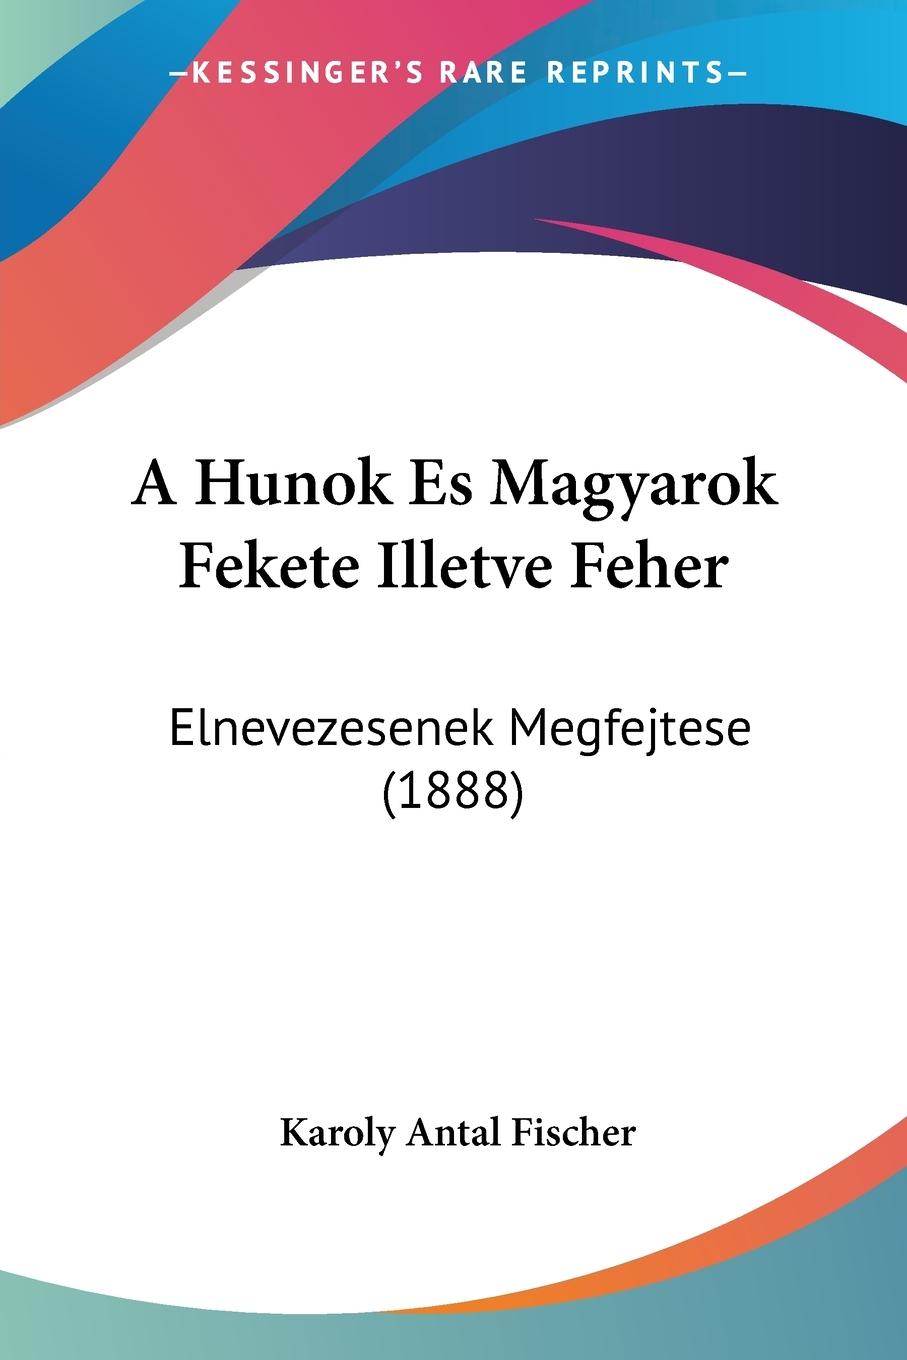 A Hunok Es Magyarok Fekete Illetve Feher - Fischer, Karoly Antal